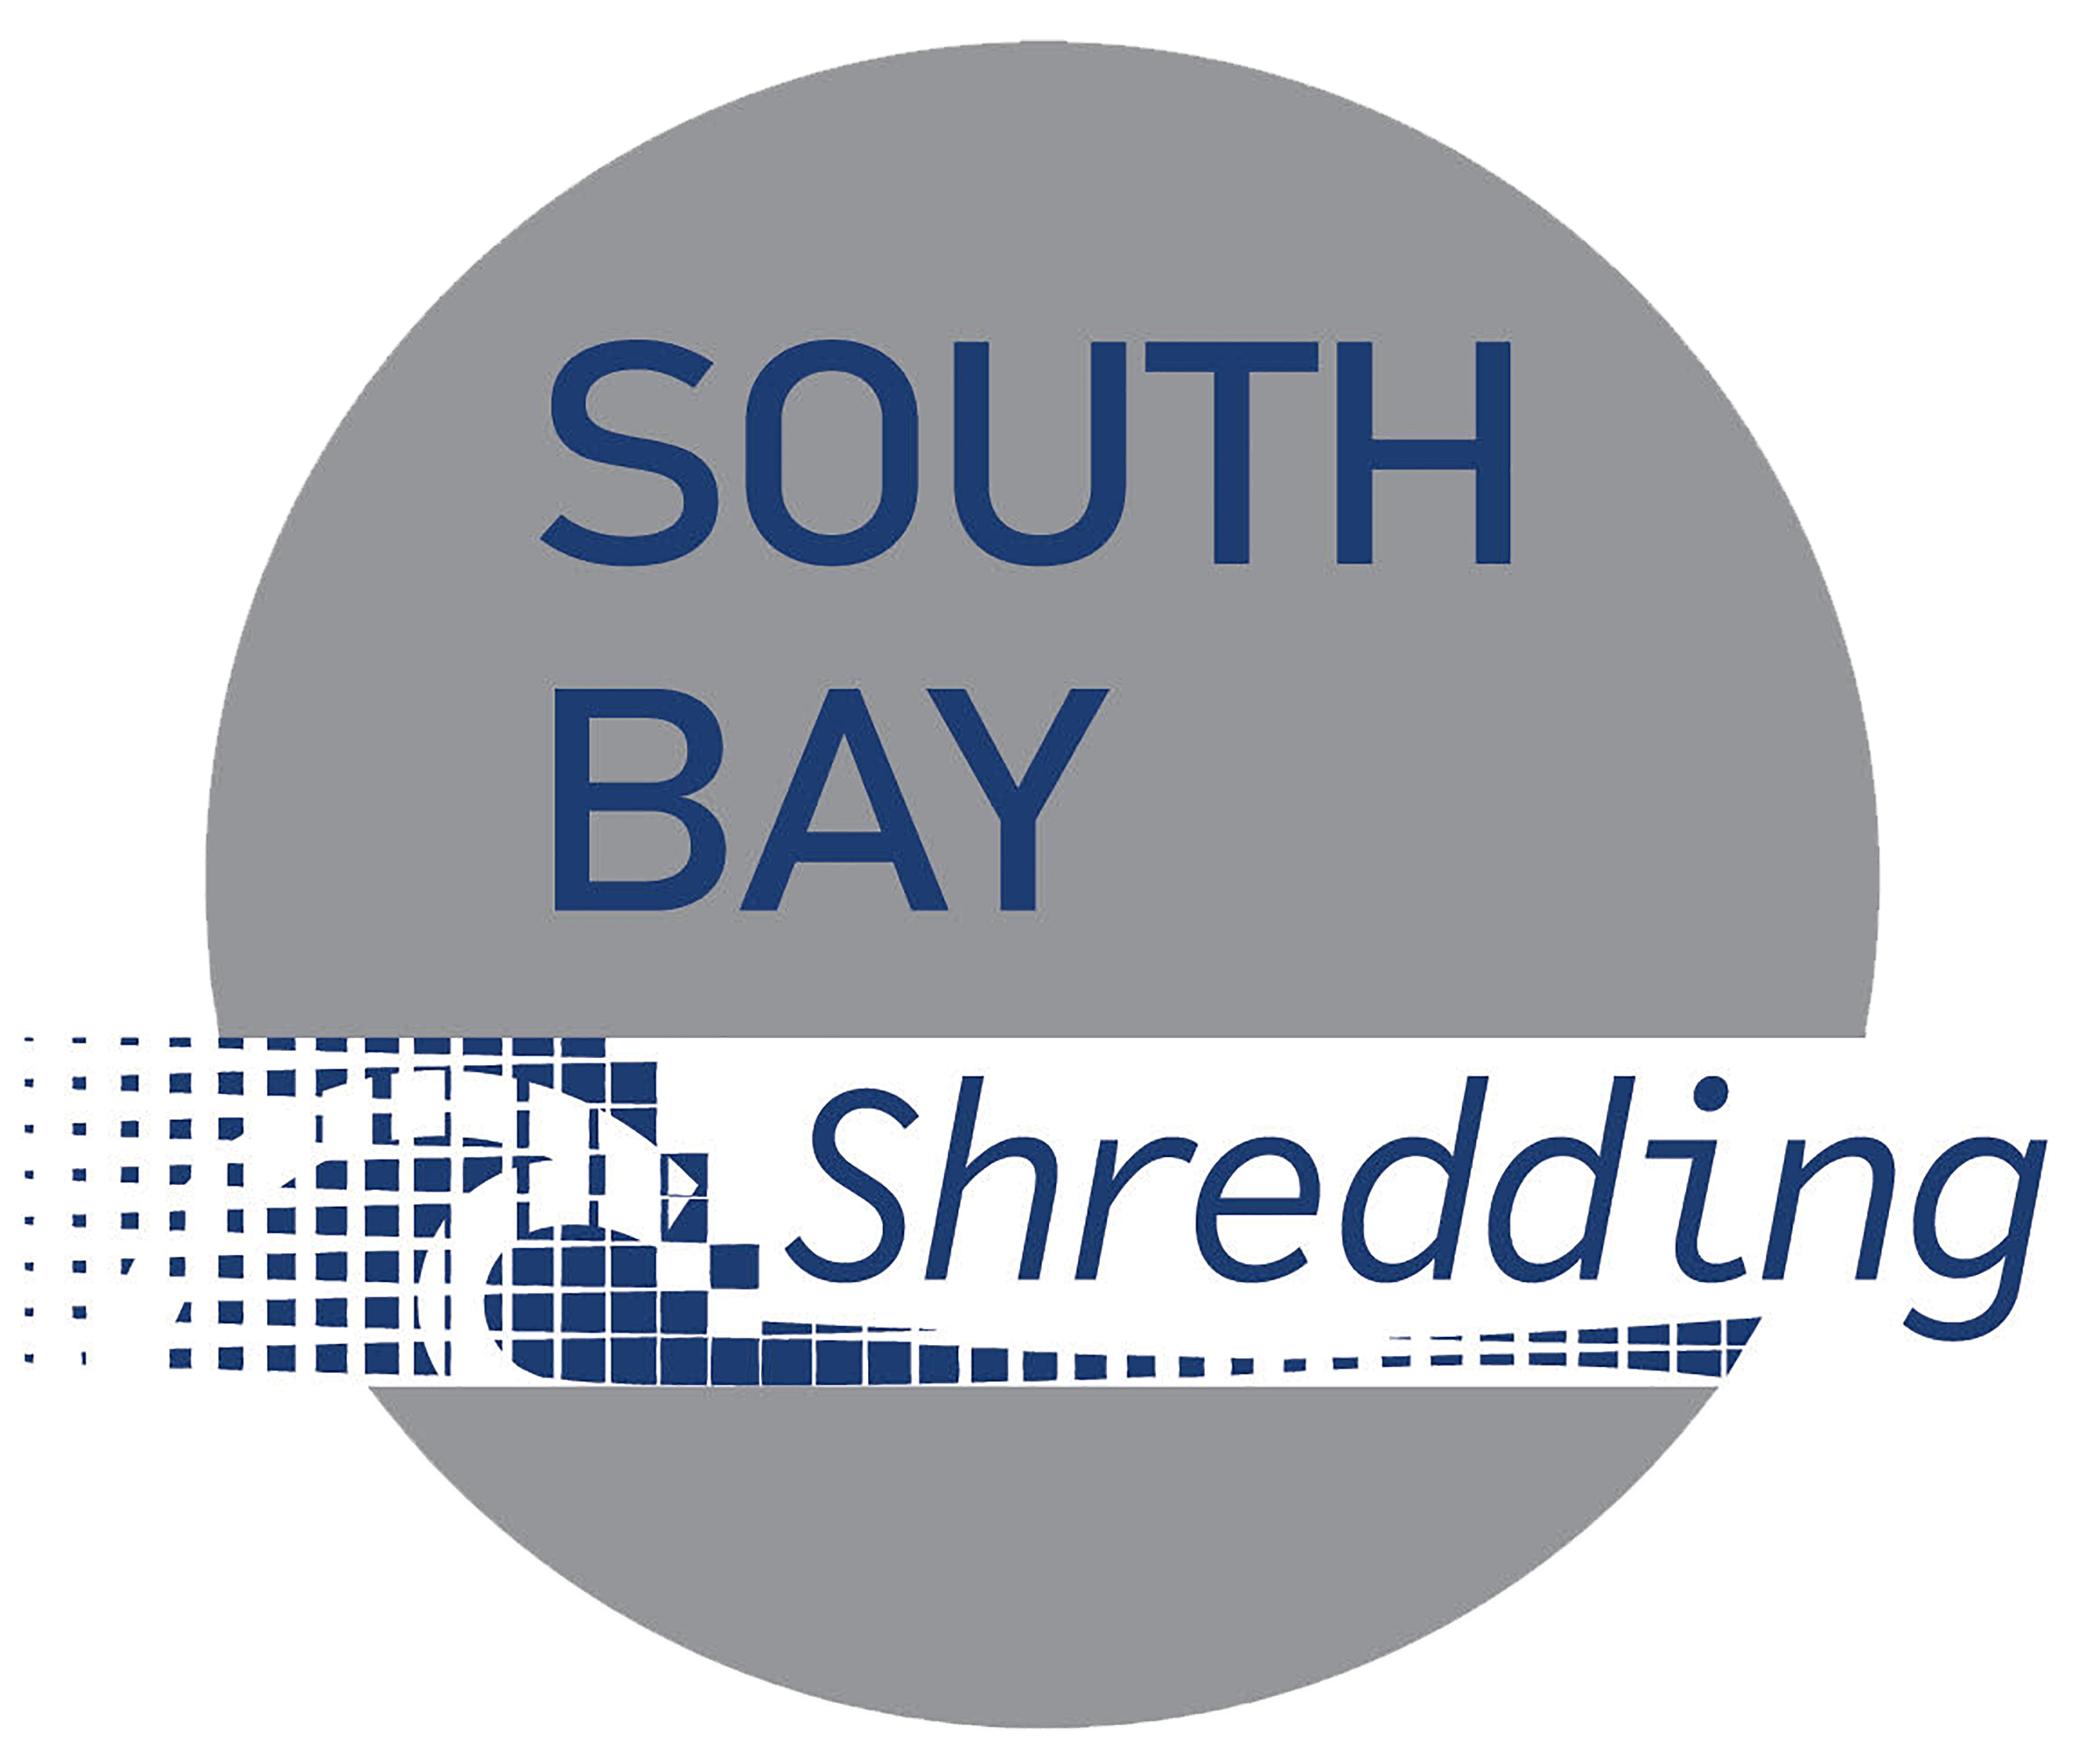 South Bay Shredding